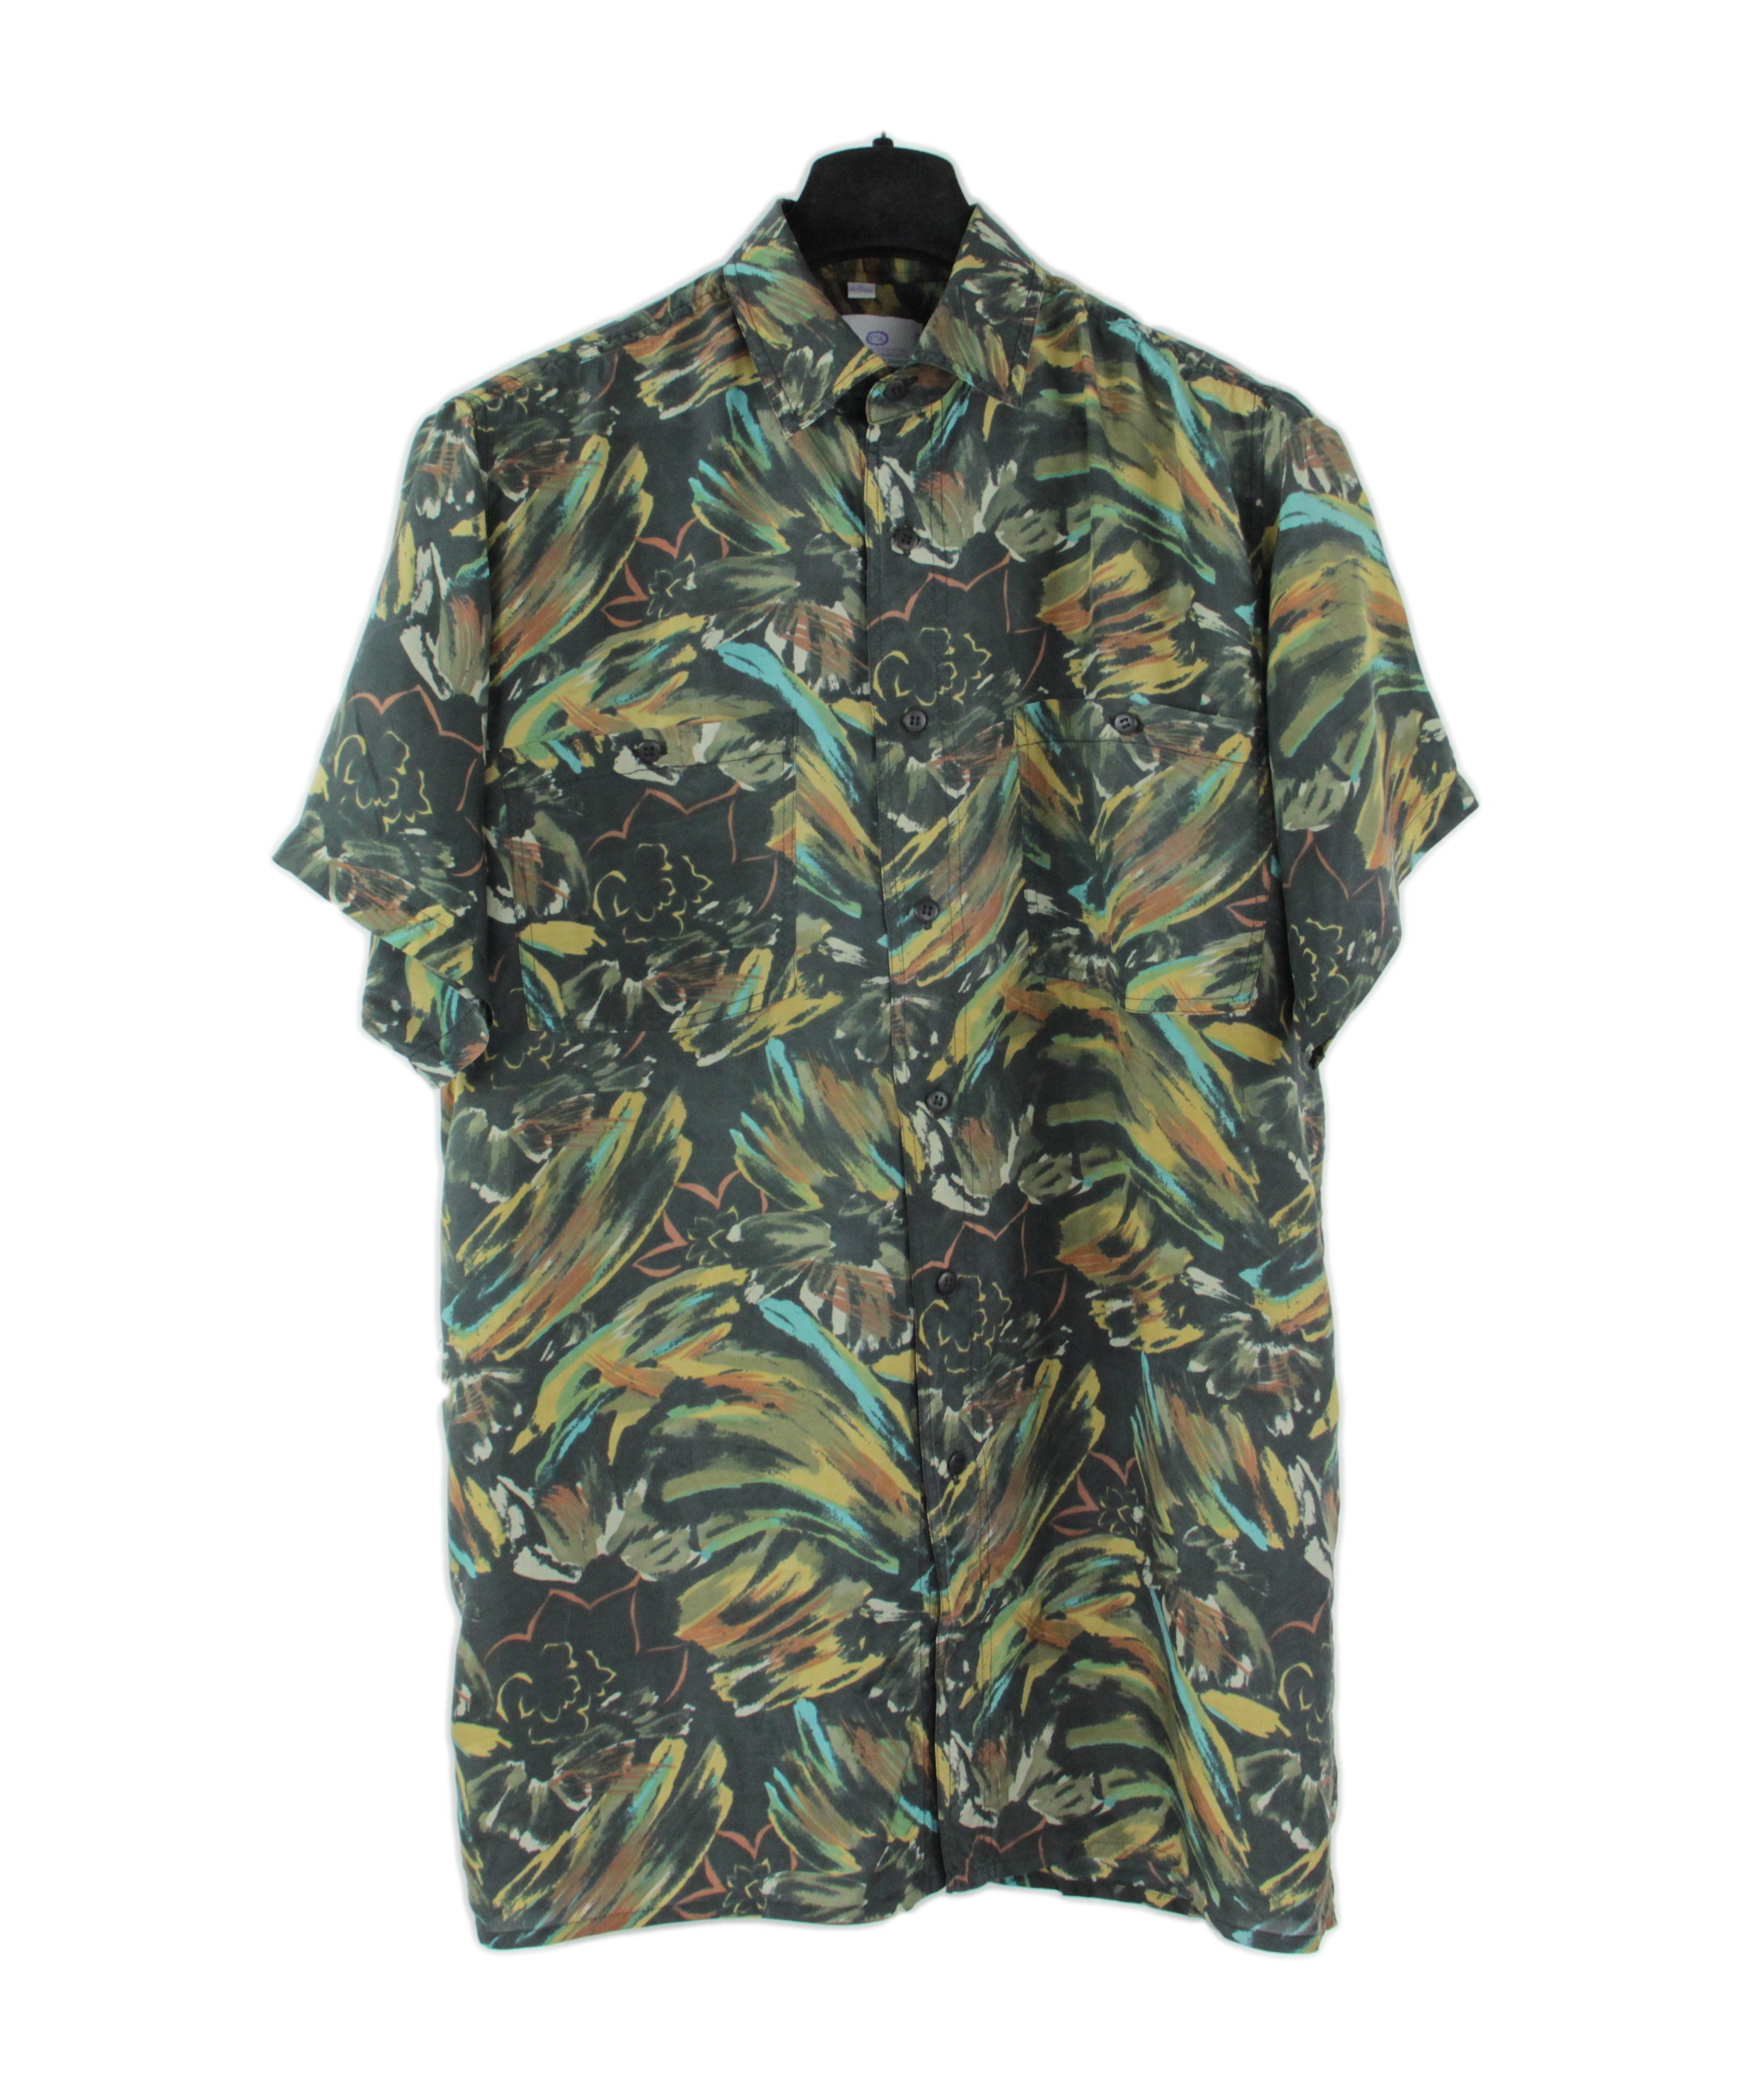 Vintage 100% Silk Khaki Green Floral / Camo Print Shirt, SIZE M